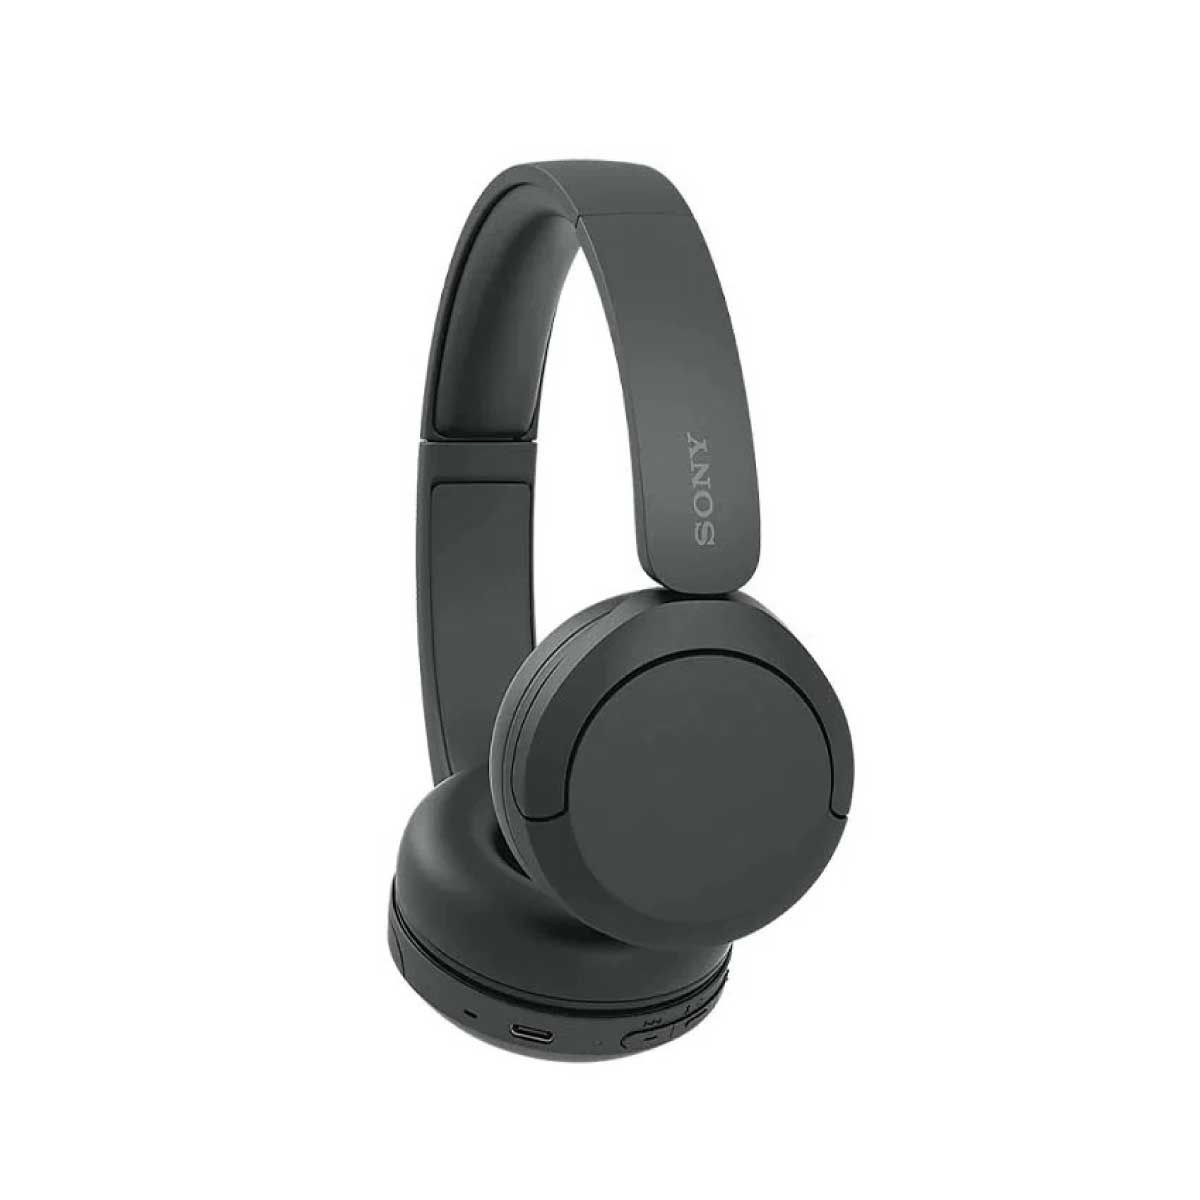 SONY  Wireless Headphones รุ่น WH-CH520 หูฟังแบบครอบหูไร้สาย